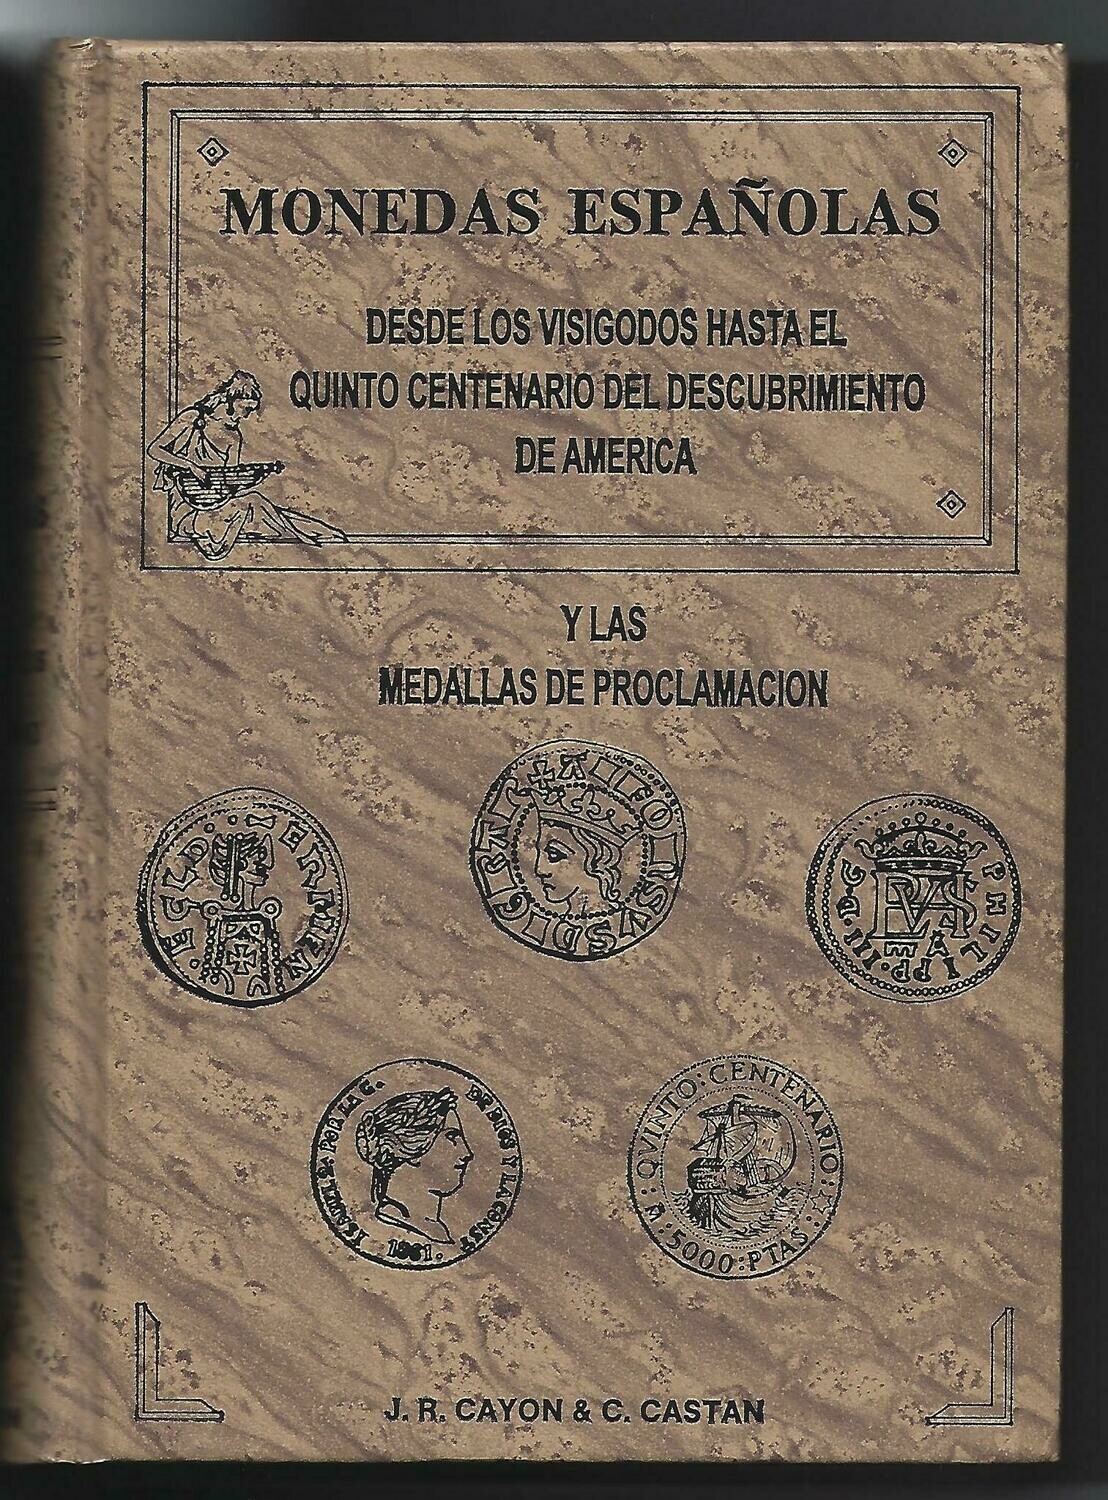 World; J.R. Cayon & C. Castan, "Monedas Españolas desde los Visigodos hasta el quinto centenario del descubrimiento de America y las Medallas de Proclamacion."